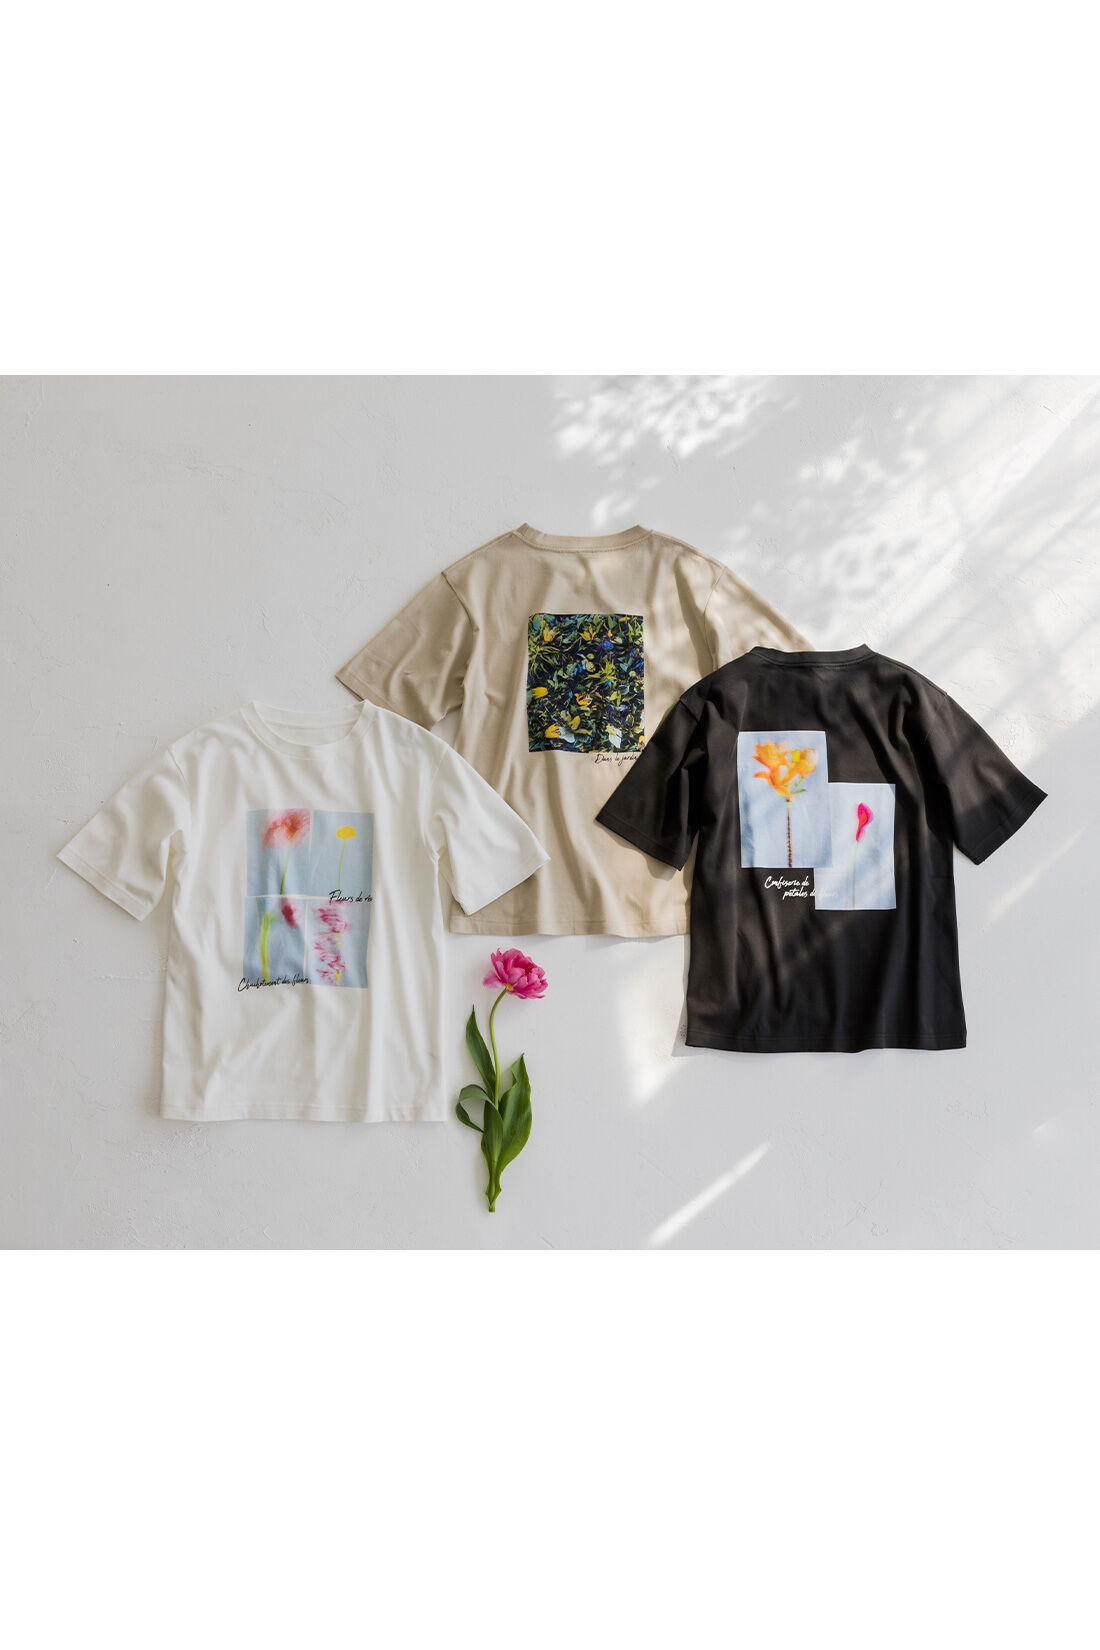 Real Stock|リブ イン コンフォート×plantica コットン100％がうれしい 花咲くフォトTシャツ〈ホワイト〉|色とりどりの花のコラージュに、ポエティックなメッセージを添えて。